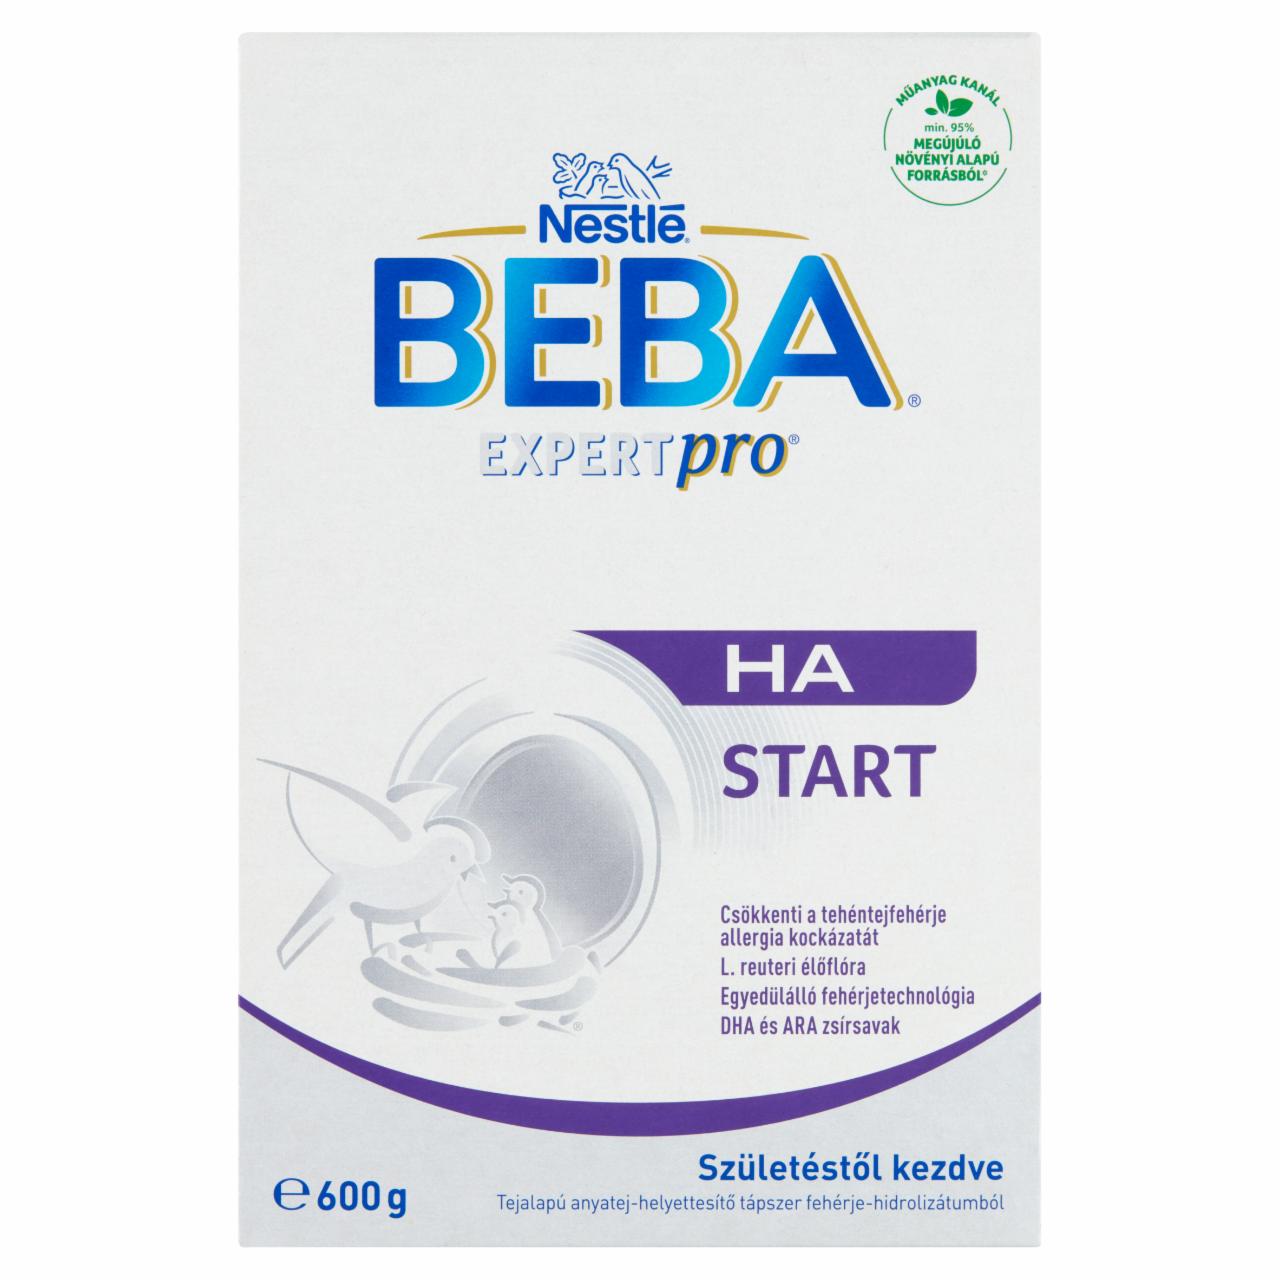 Képek - Beba ExpertPro HA Start tejalapú anyatej-helyettesítő tápszer születéstől kezdve 2 x 300 g (600 g)